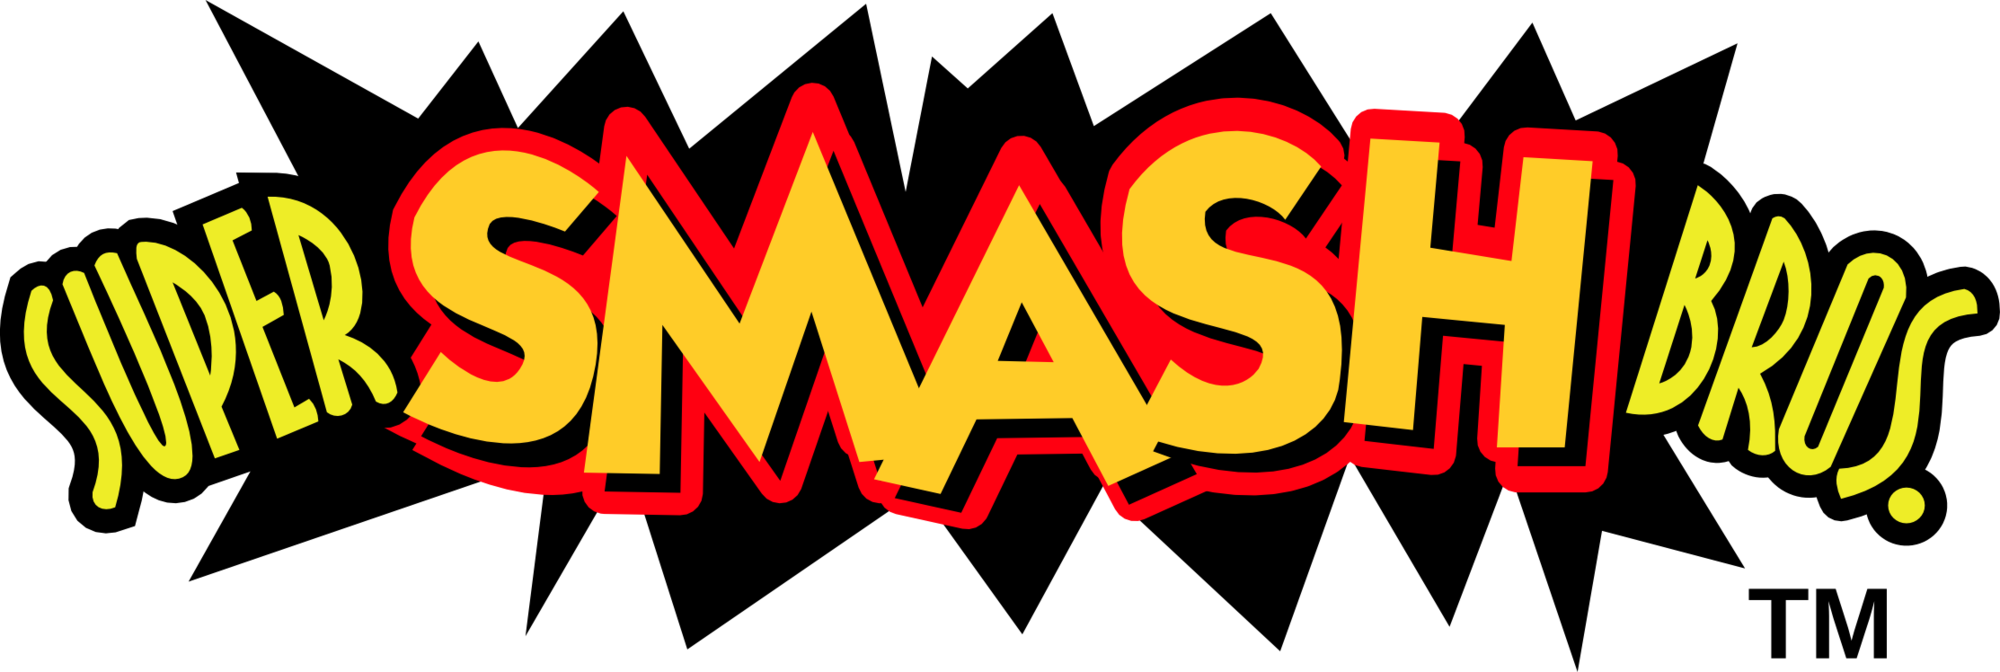 Super Smash Bros Logo Transparent Transparent Background - Original Super Smash Bros Logo (2000x672)